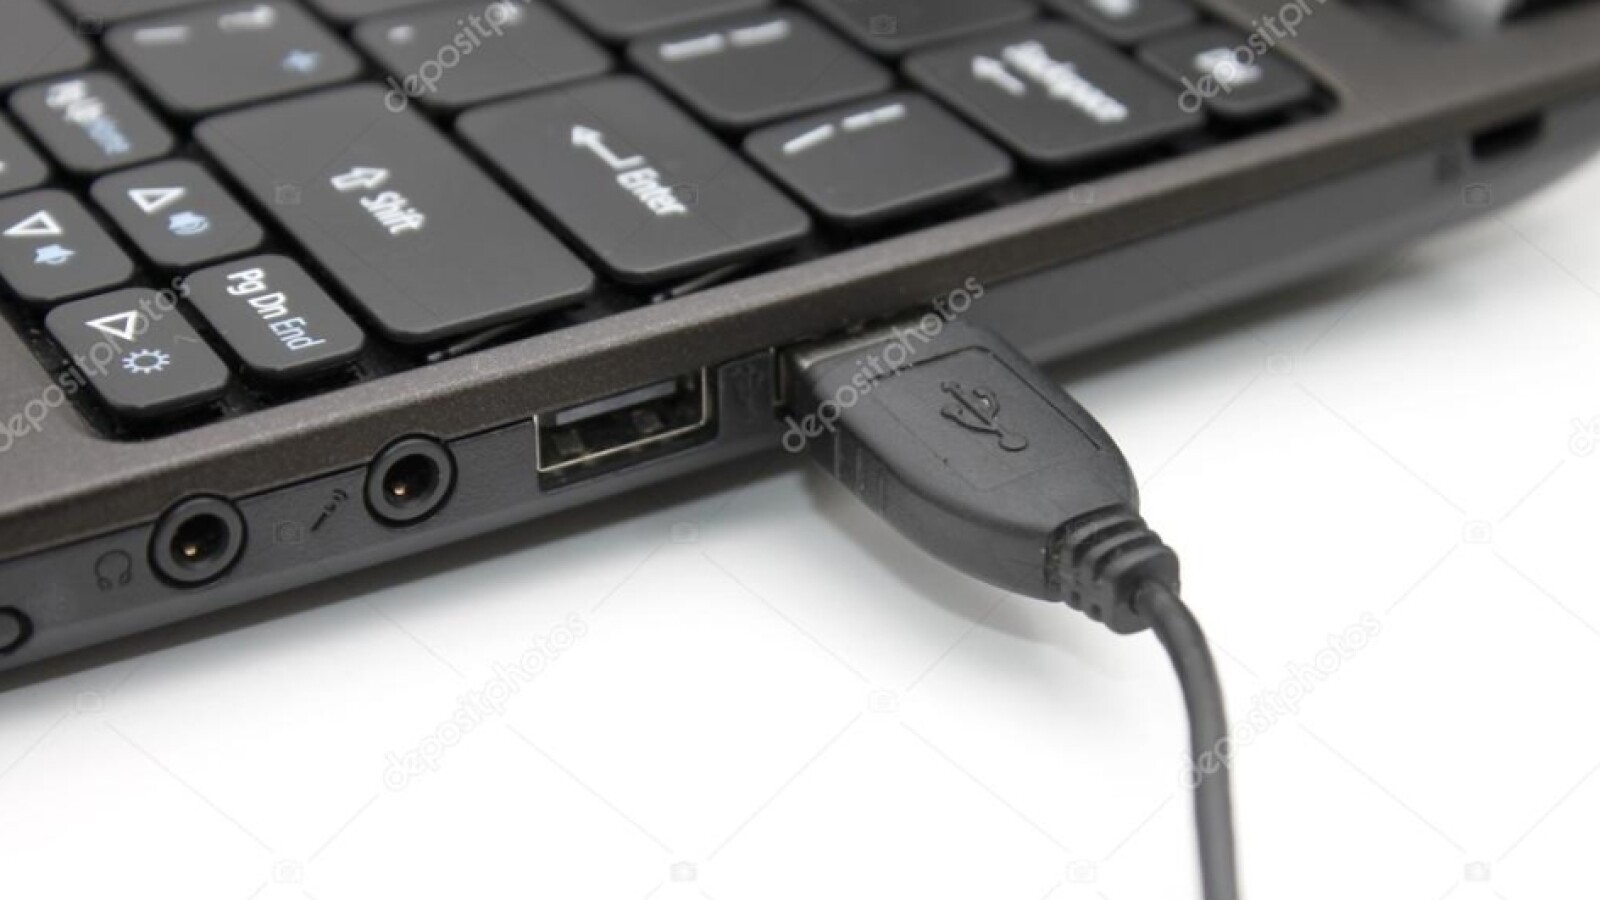 Verwenden Sie einen anderen USB-Port: Probieren Sie einen anderen USB-Port an Ihrem Computer aus, um sicherzustellen, dass der aktuelle Port nicht das Problem ist.
Überprüfen Sie den Computer: Stellen Sie sicher, dass der Computer das iPhone erkennt, indem Sie es an einen anderen Computer anschließen.